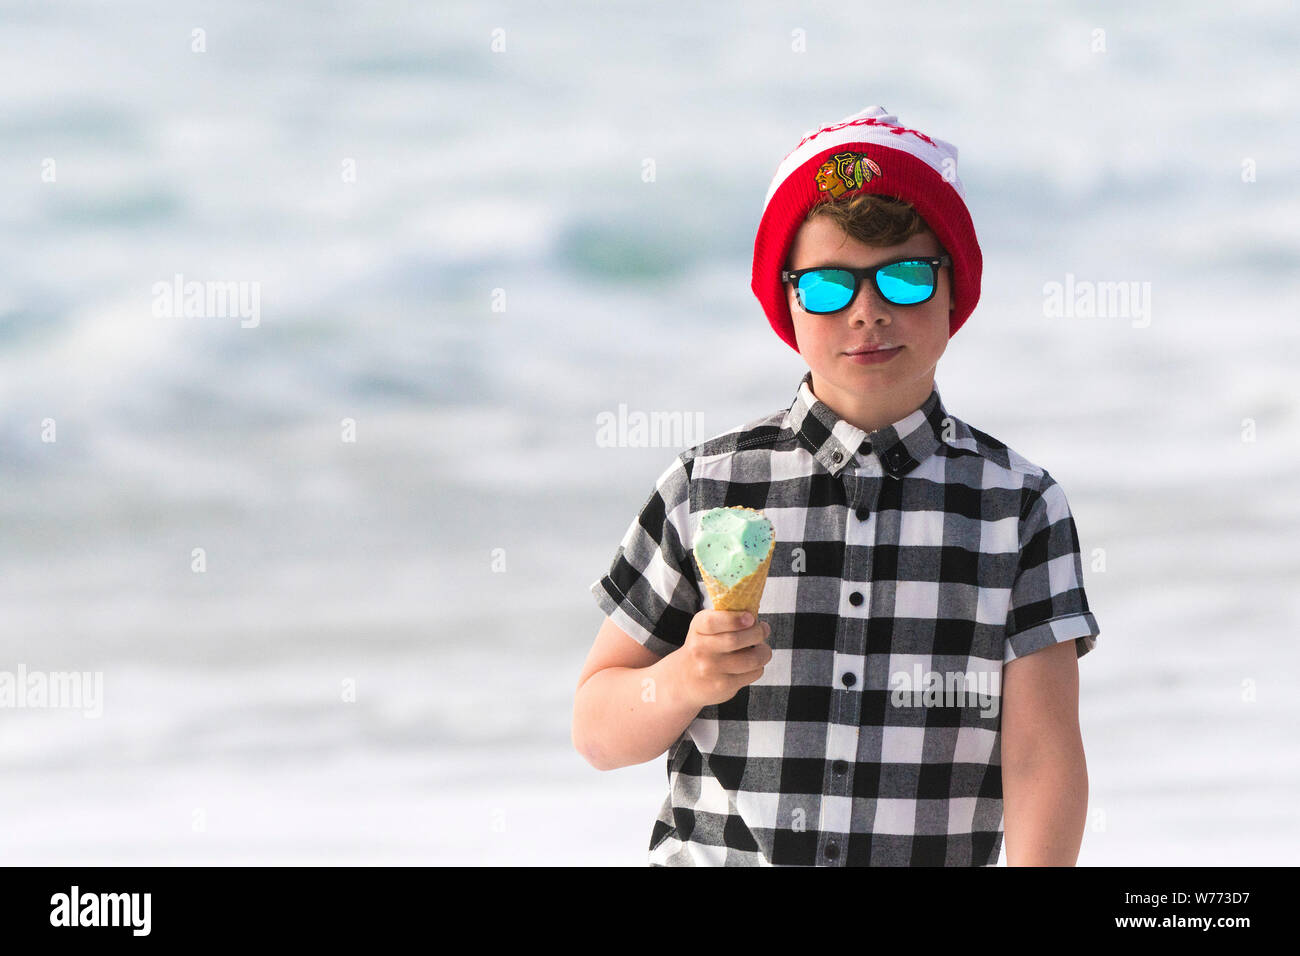 Un jeune garçon portant des lunettes réfléchissantes, chemise et un Blackhawks de Chicago bobble hat manger une glace. Banque D'Images